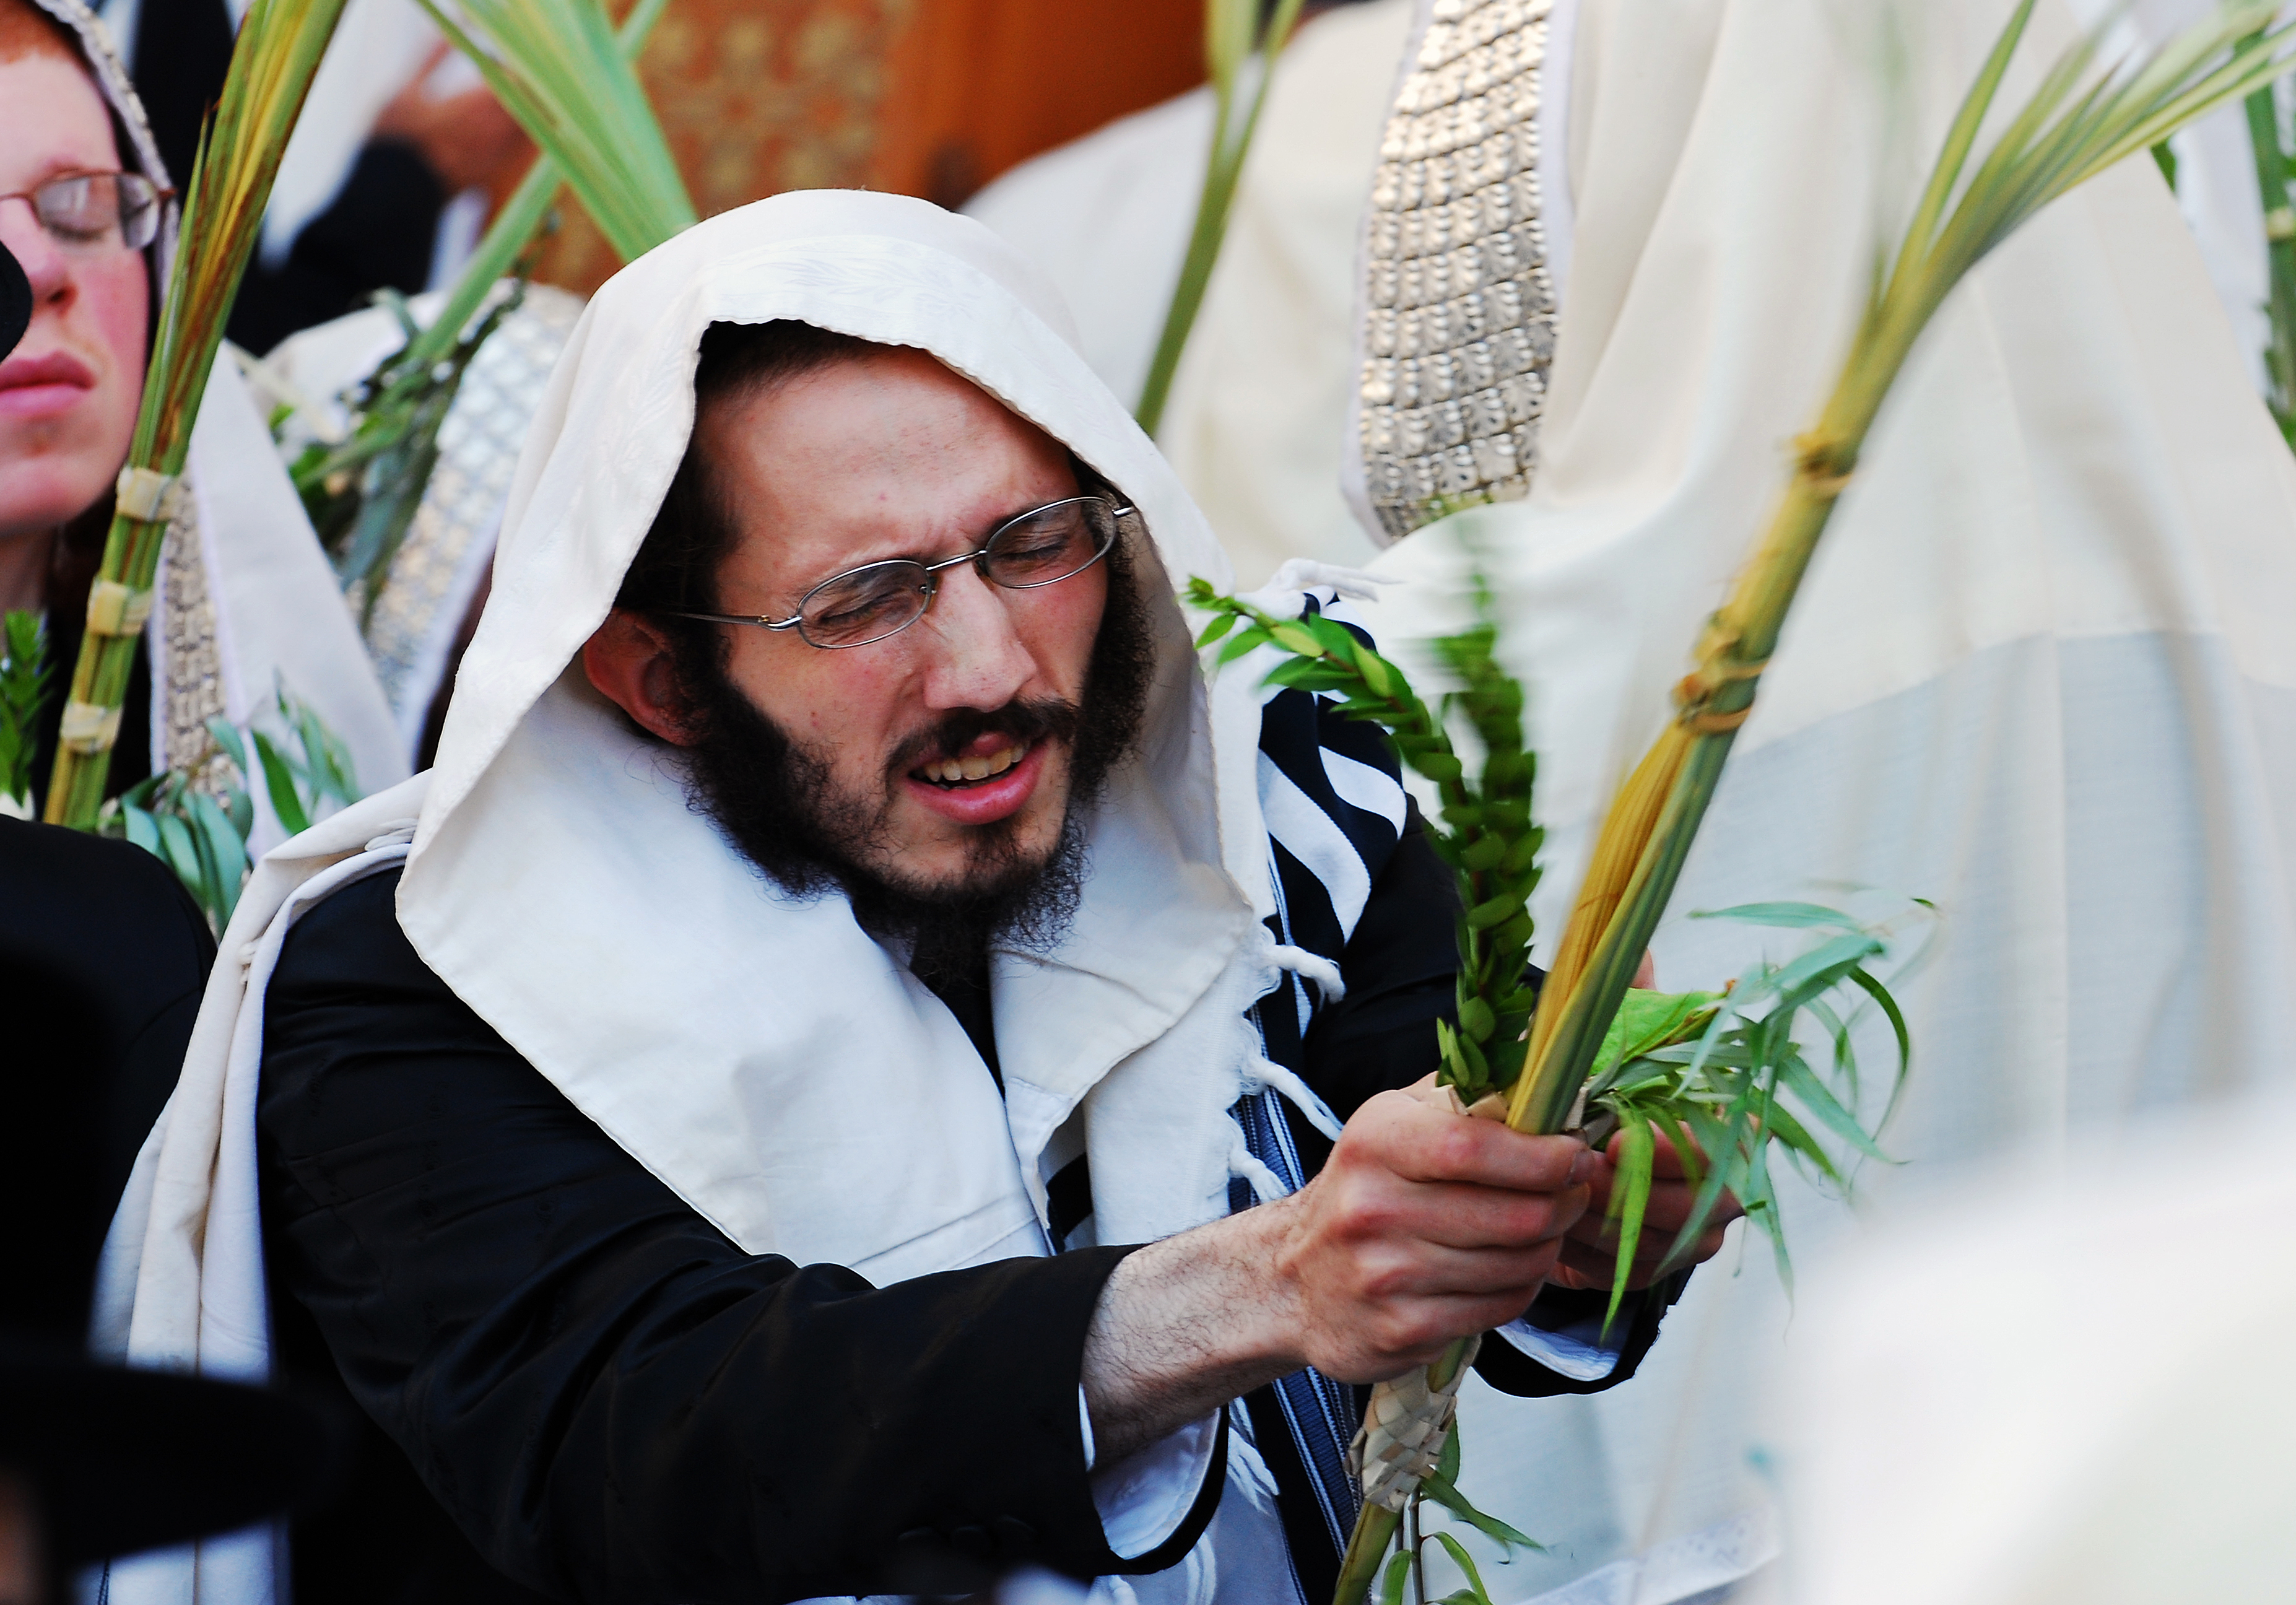 shaking a Lulav during the Festival of Sukkot. - Catholic Digest